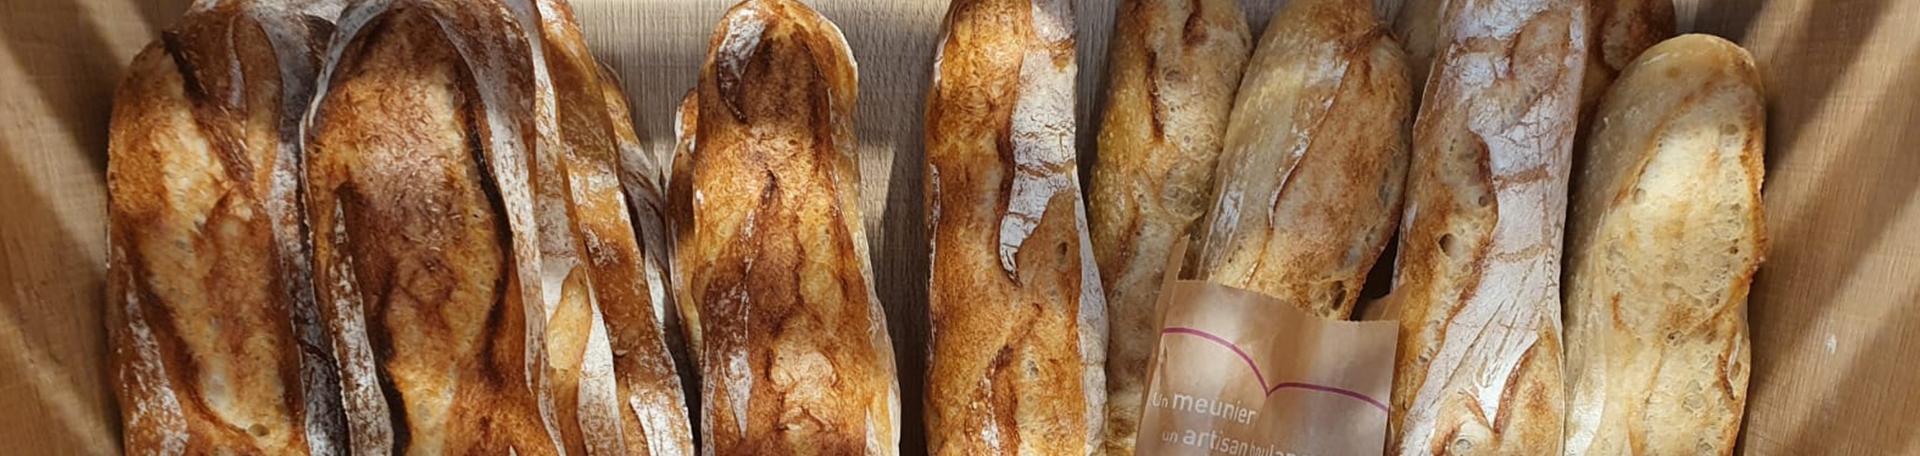 Boulangerie artisanale et viennoiserie La Clusaz : nos pains avec levains